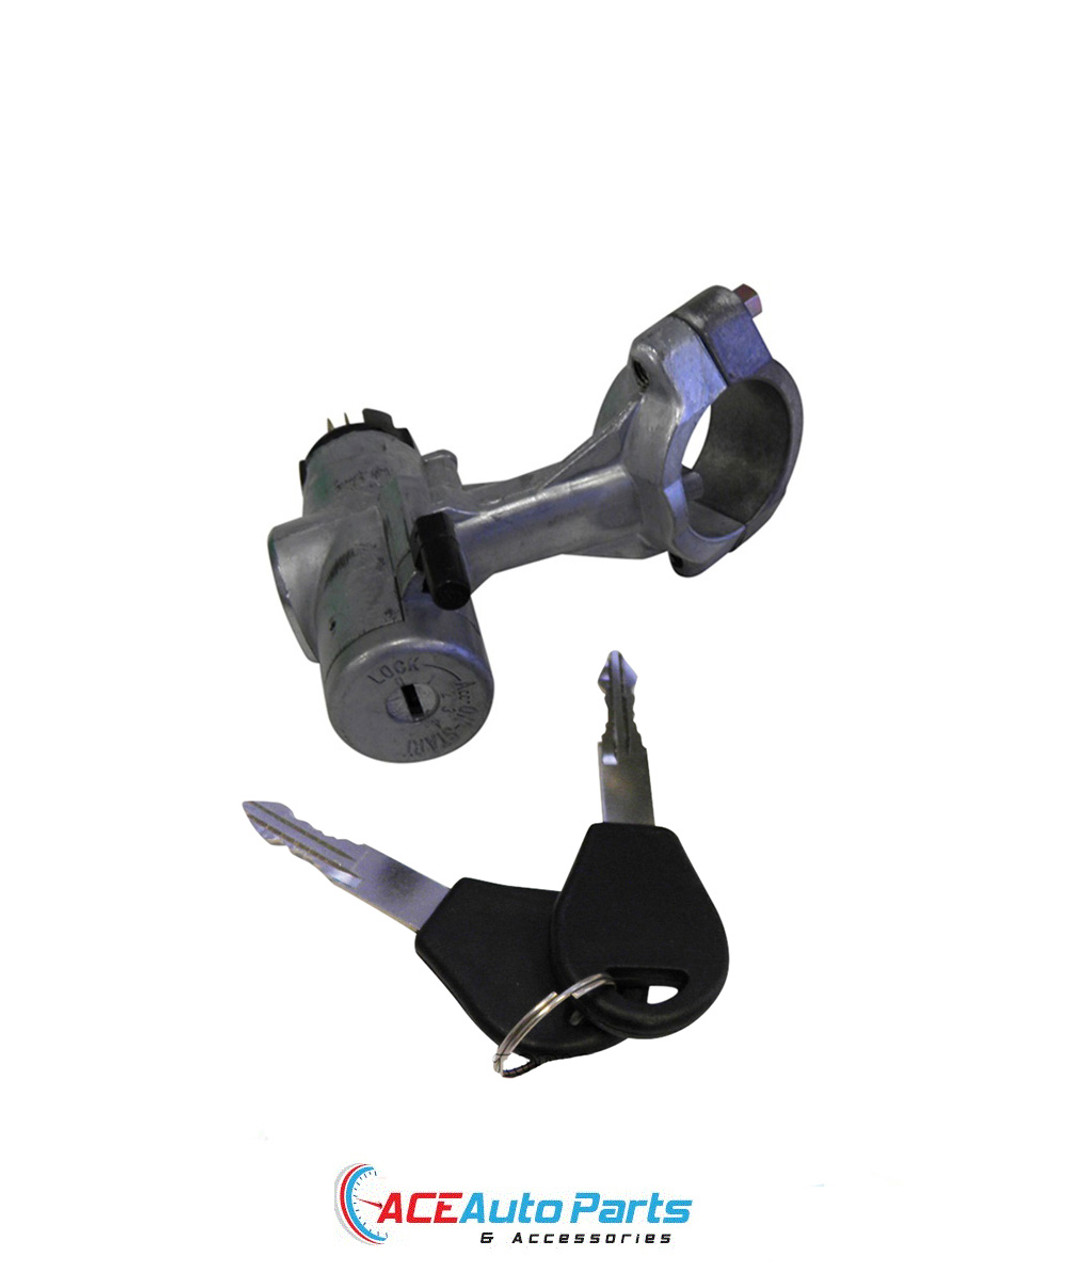 Ignition Barrel Lock + Switch + Keys For Nissan Pathfinder D21 